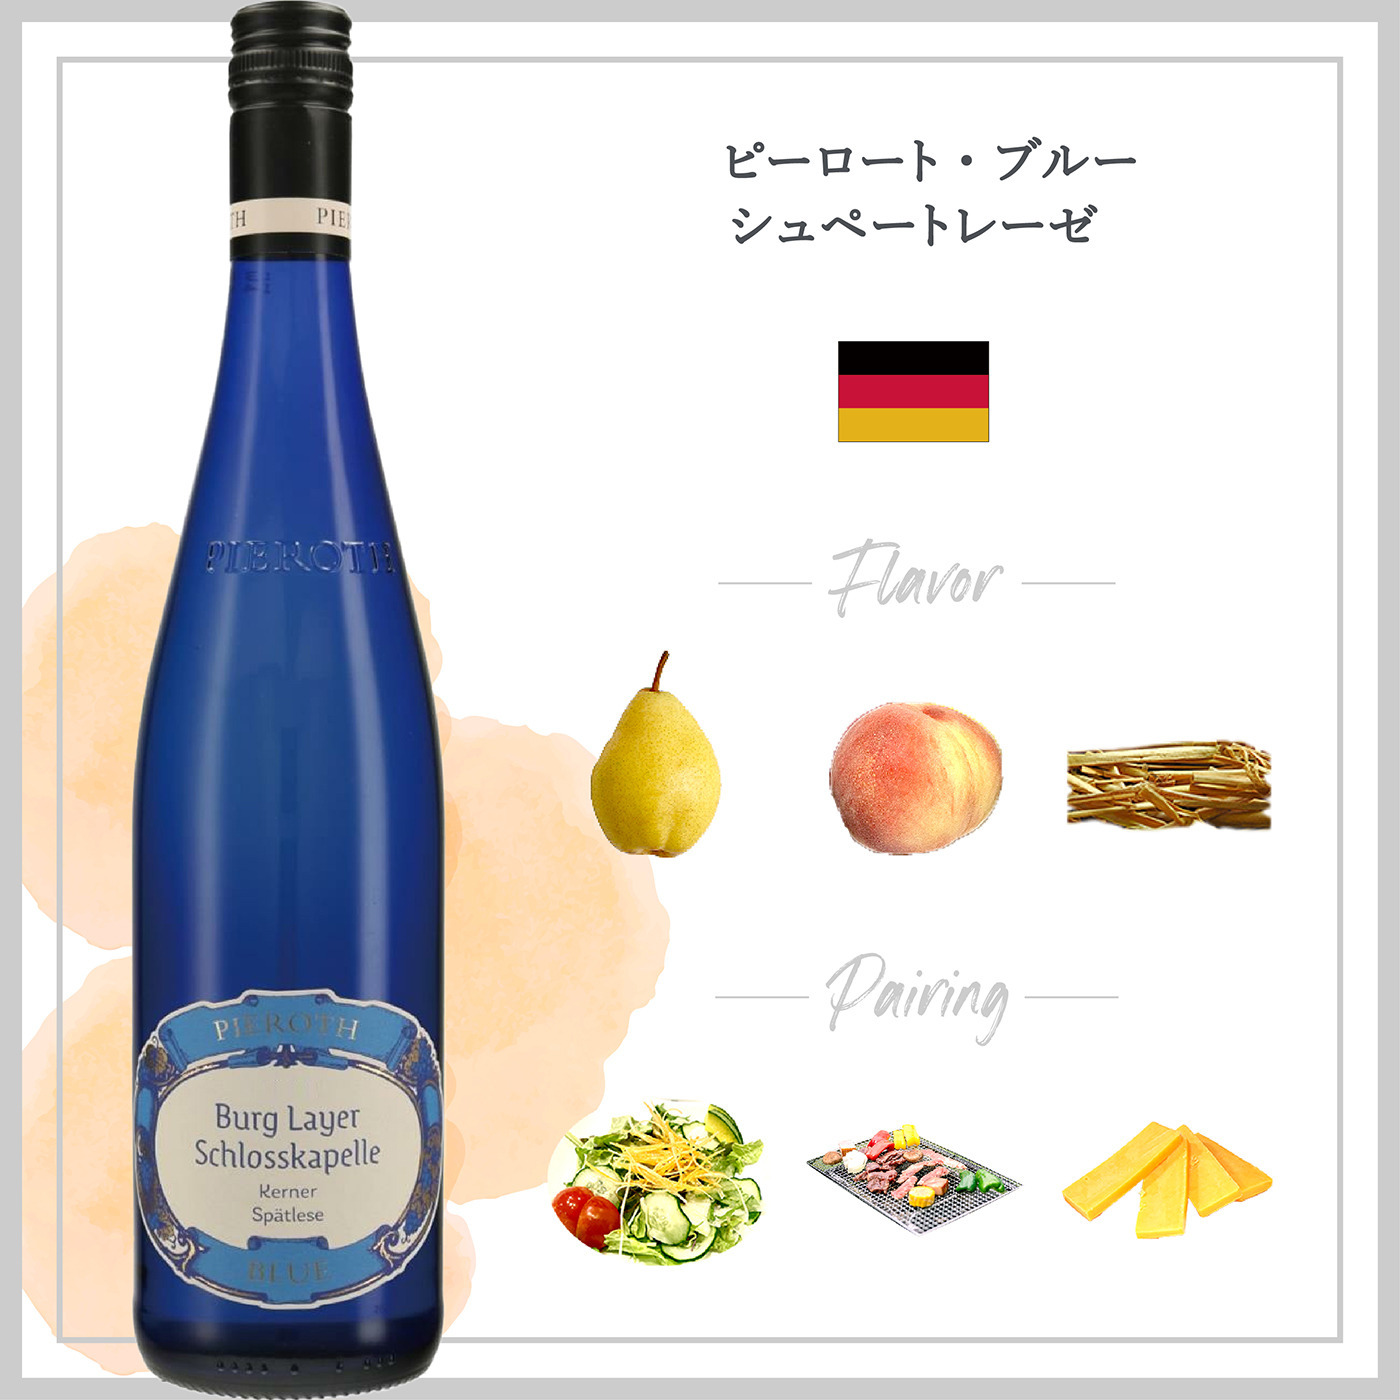 ピーロート・ブルー シュペートレーゼ (2021) ピーロート・ジャパン ハイエンド・高級ワイン通販